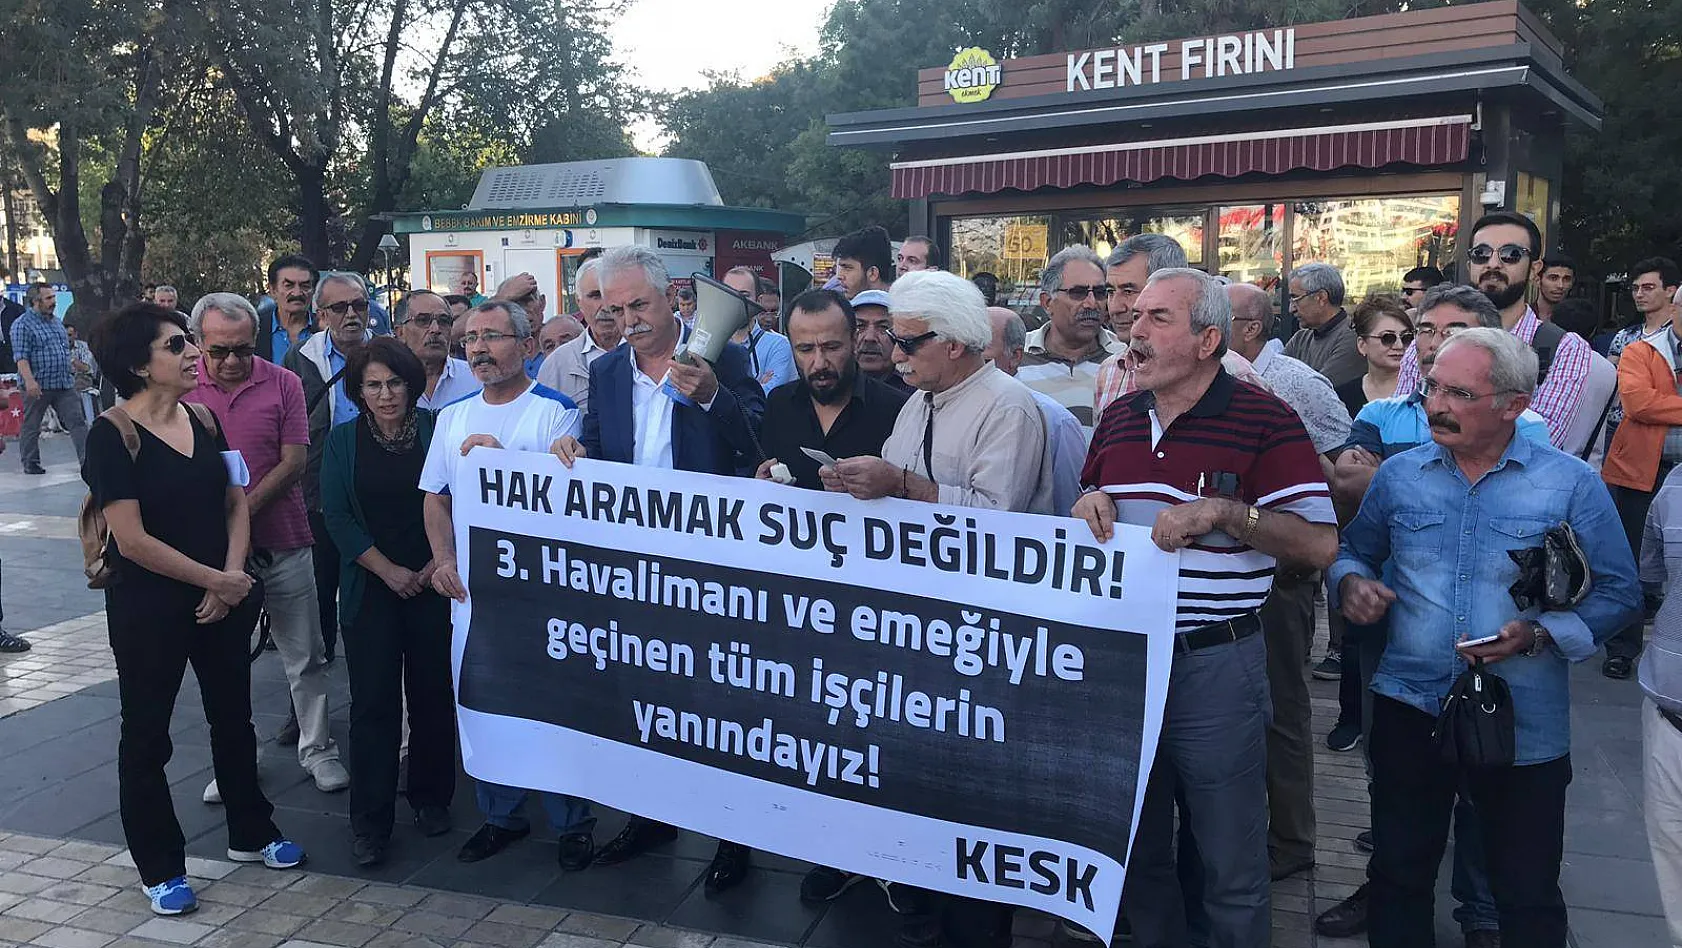 Kayseri'de 3'üncü Havalimanı işçilerine destek eylemi: Hak aramak suç değildir